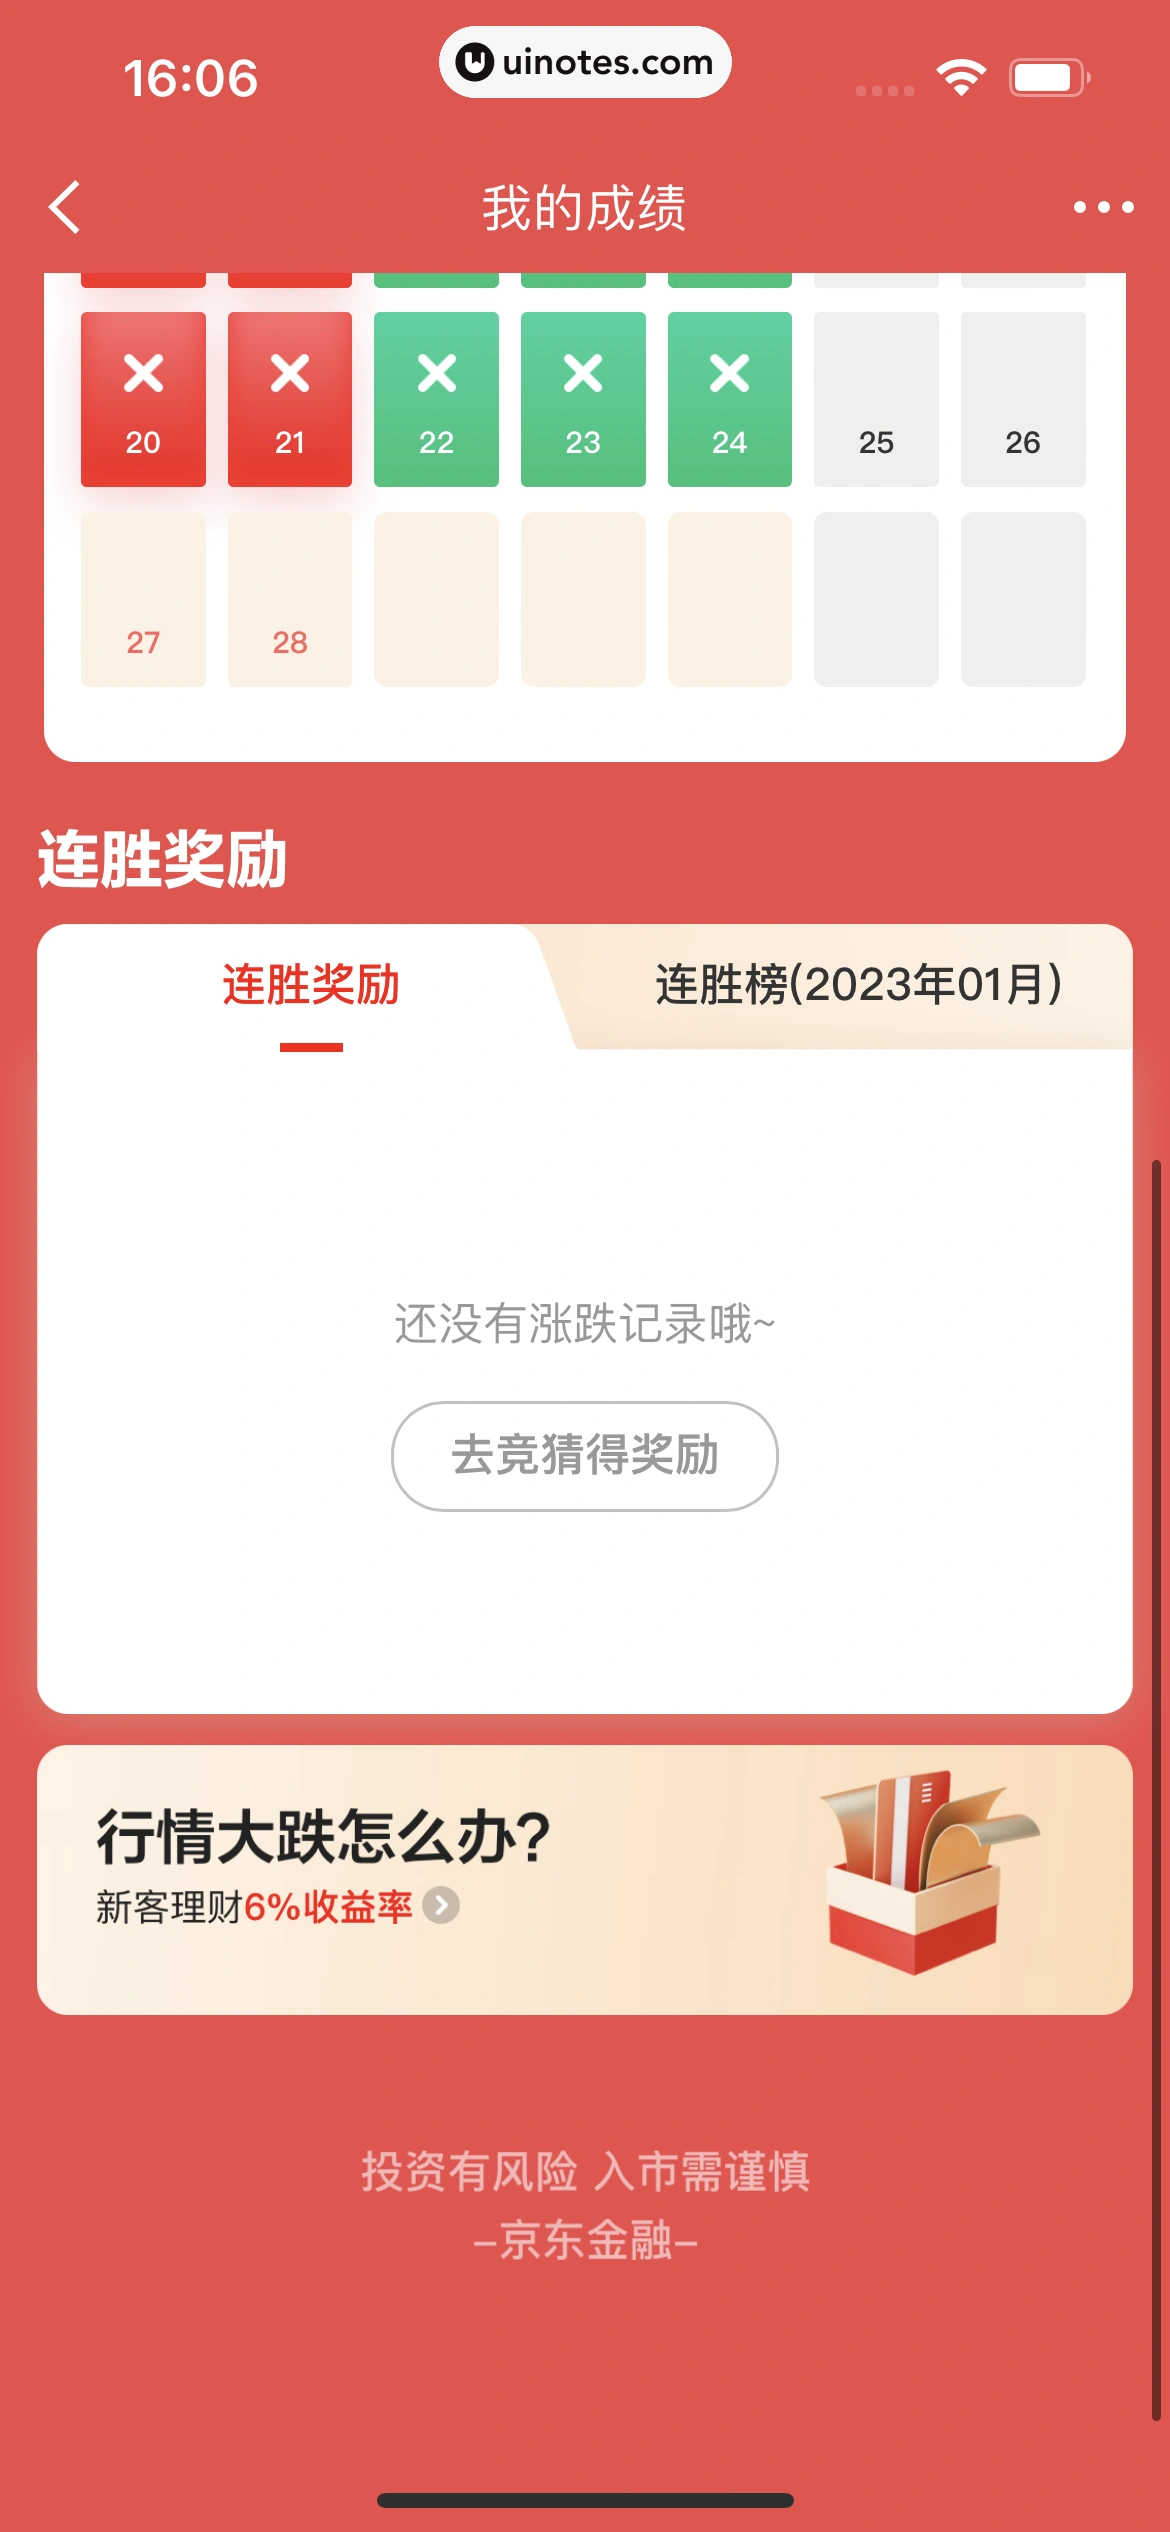 京东金融 App 截图 353 - UI Notes